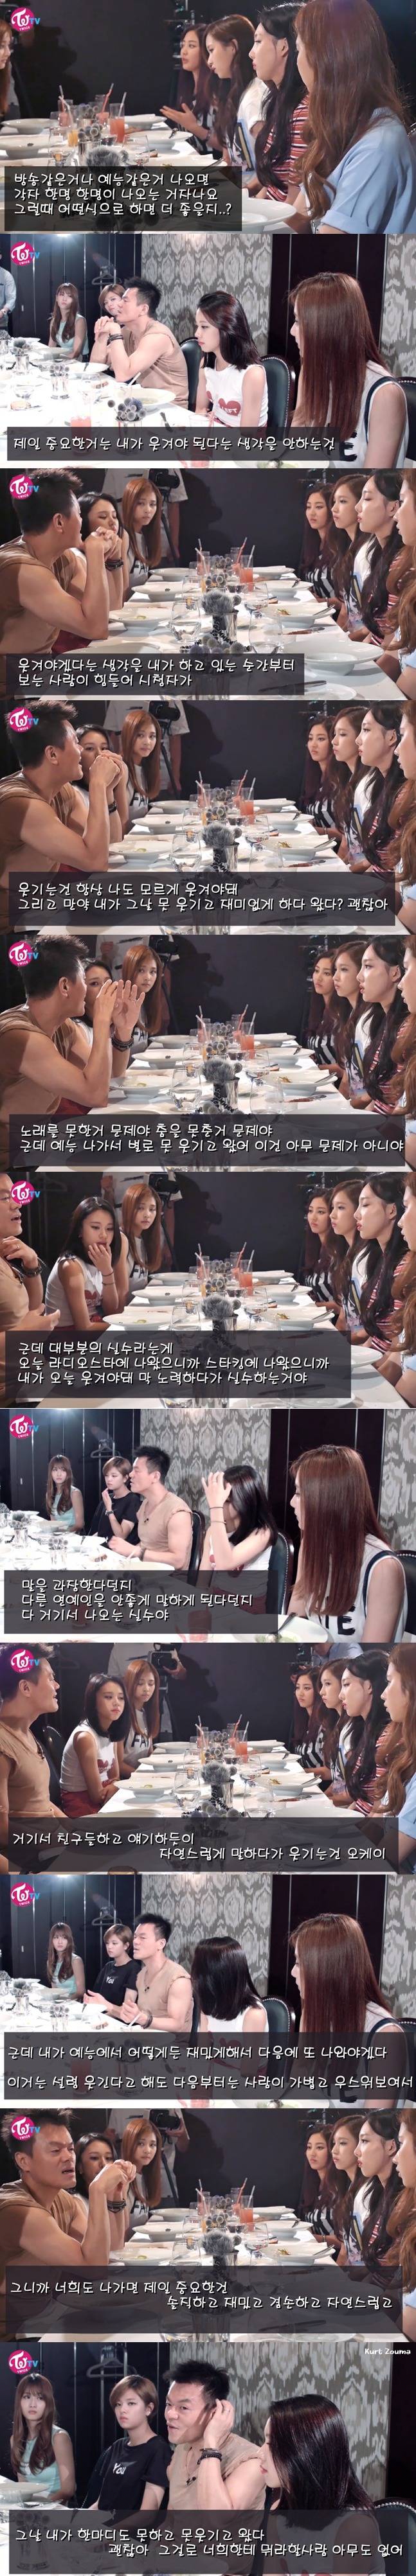 트와이스한테 예능 조언하는 JYP | 인스티즈